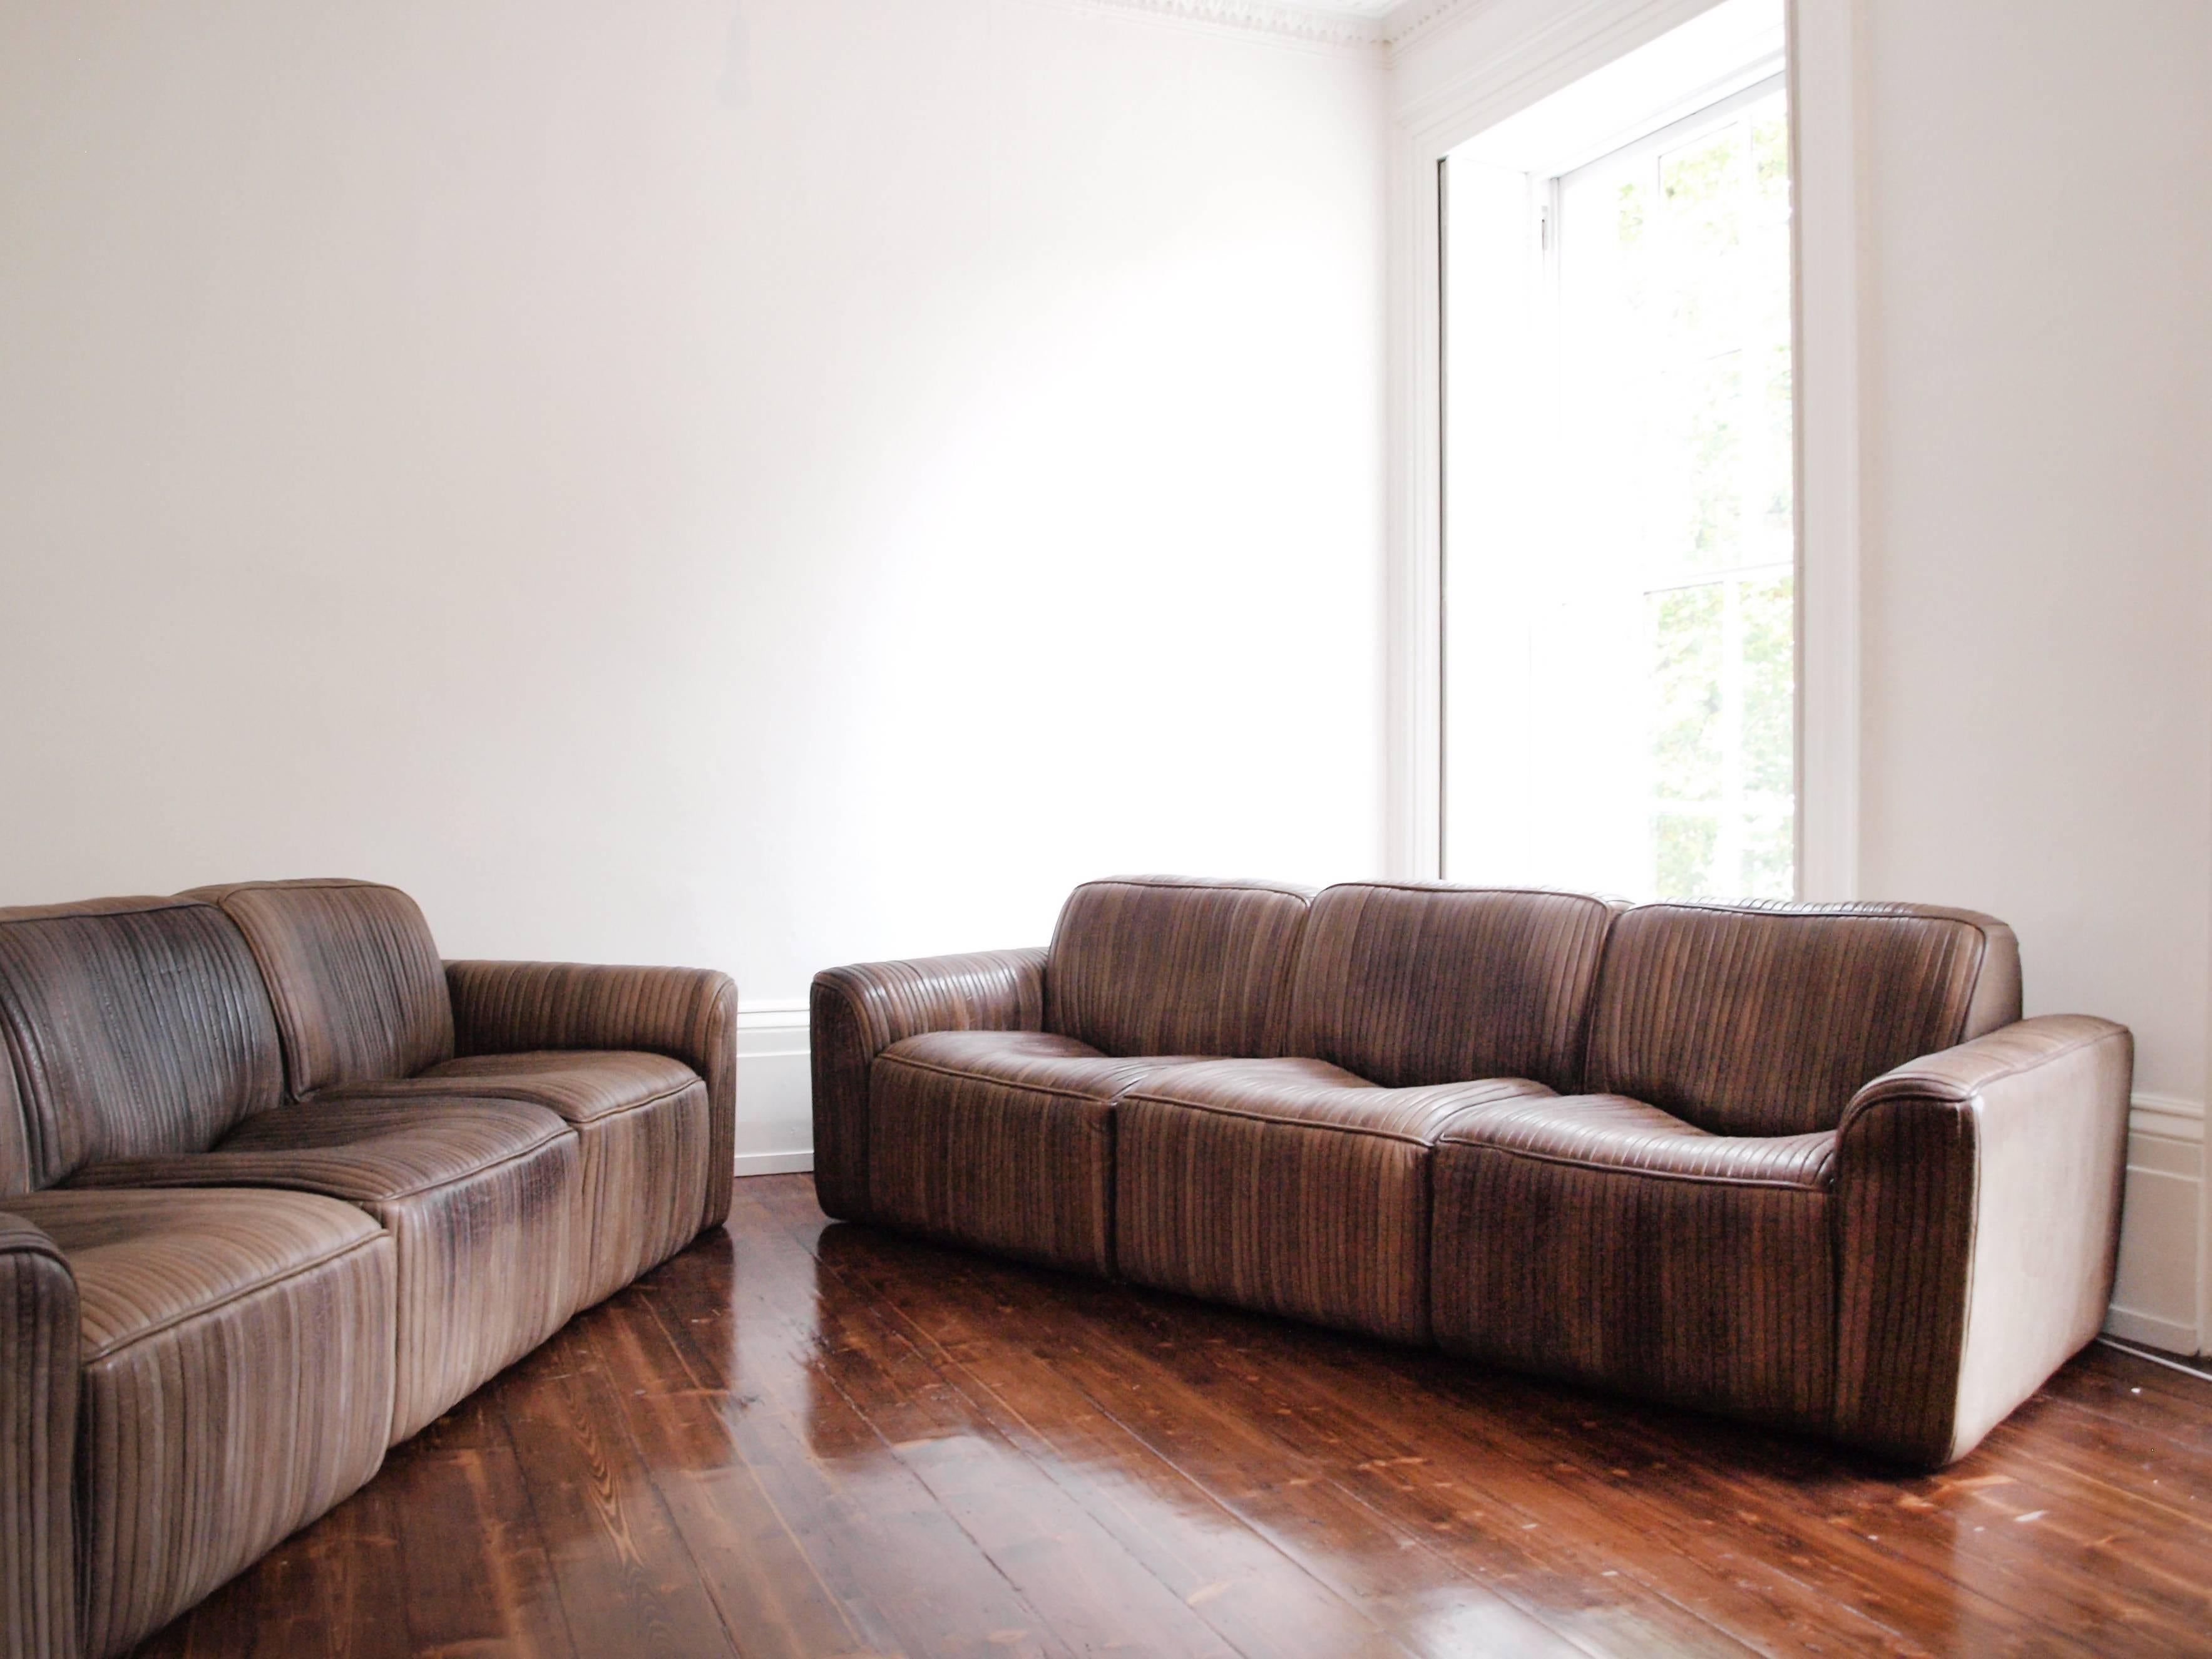 Pair of Leather Strip Three-Seat Sofas Attributed to De Sede (Schweizerisch)